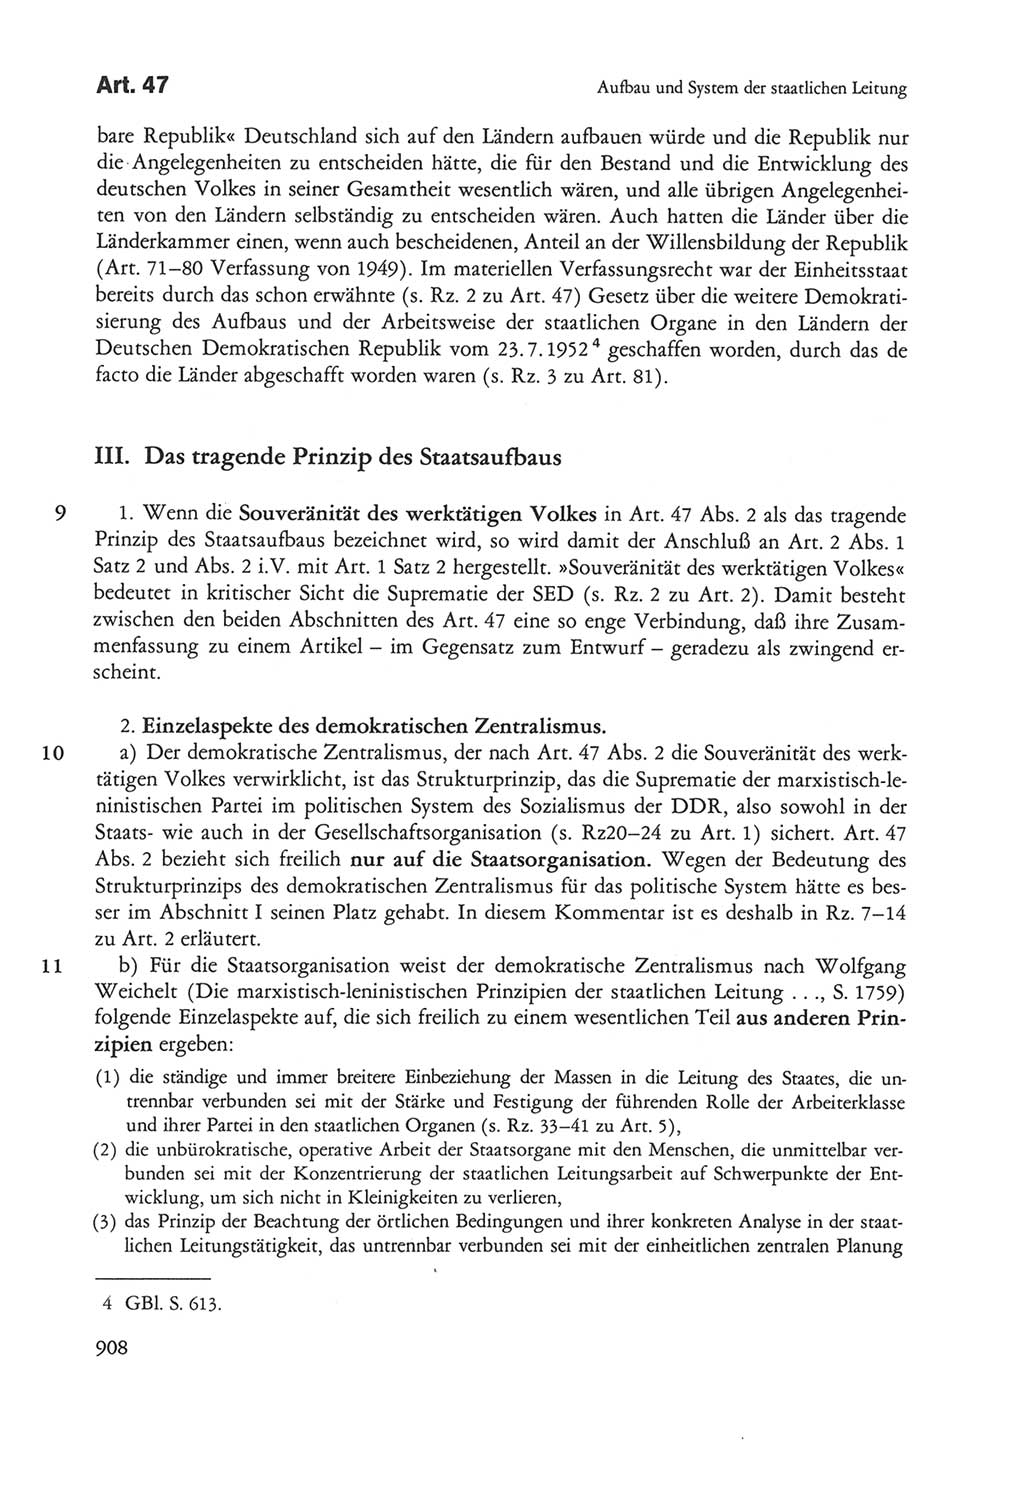 Die sozialistische Verfassung der Deutschen Demokratischen Republik (DDR), Kommentar 1982, Seite 908 (Soz. Verf. DDR Komm. 1982, S. 908)